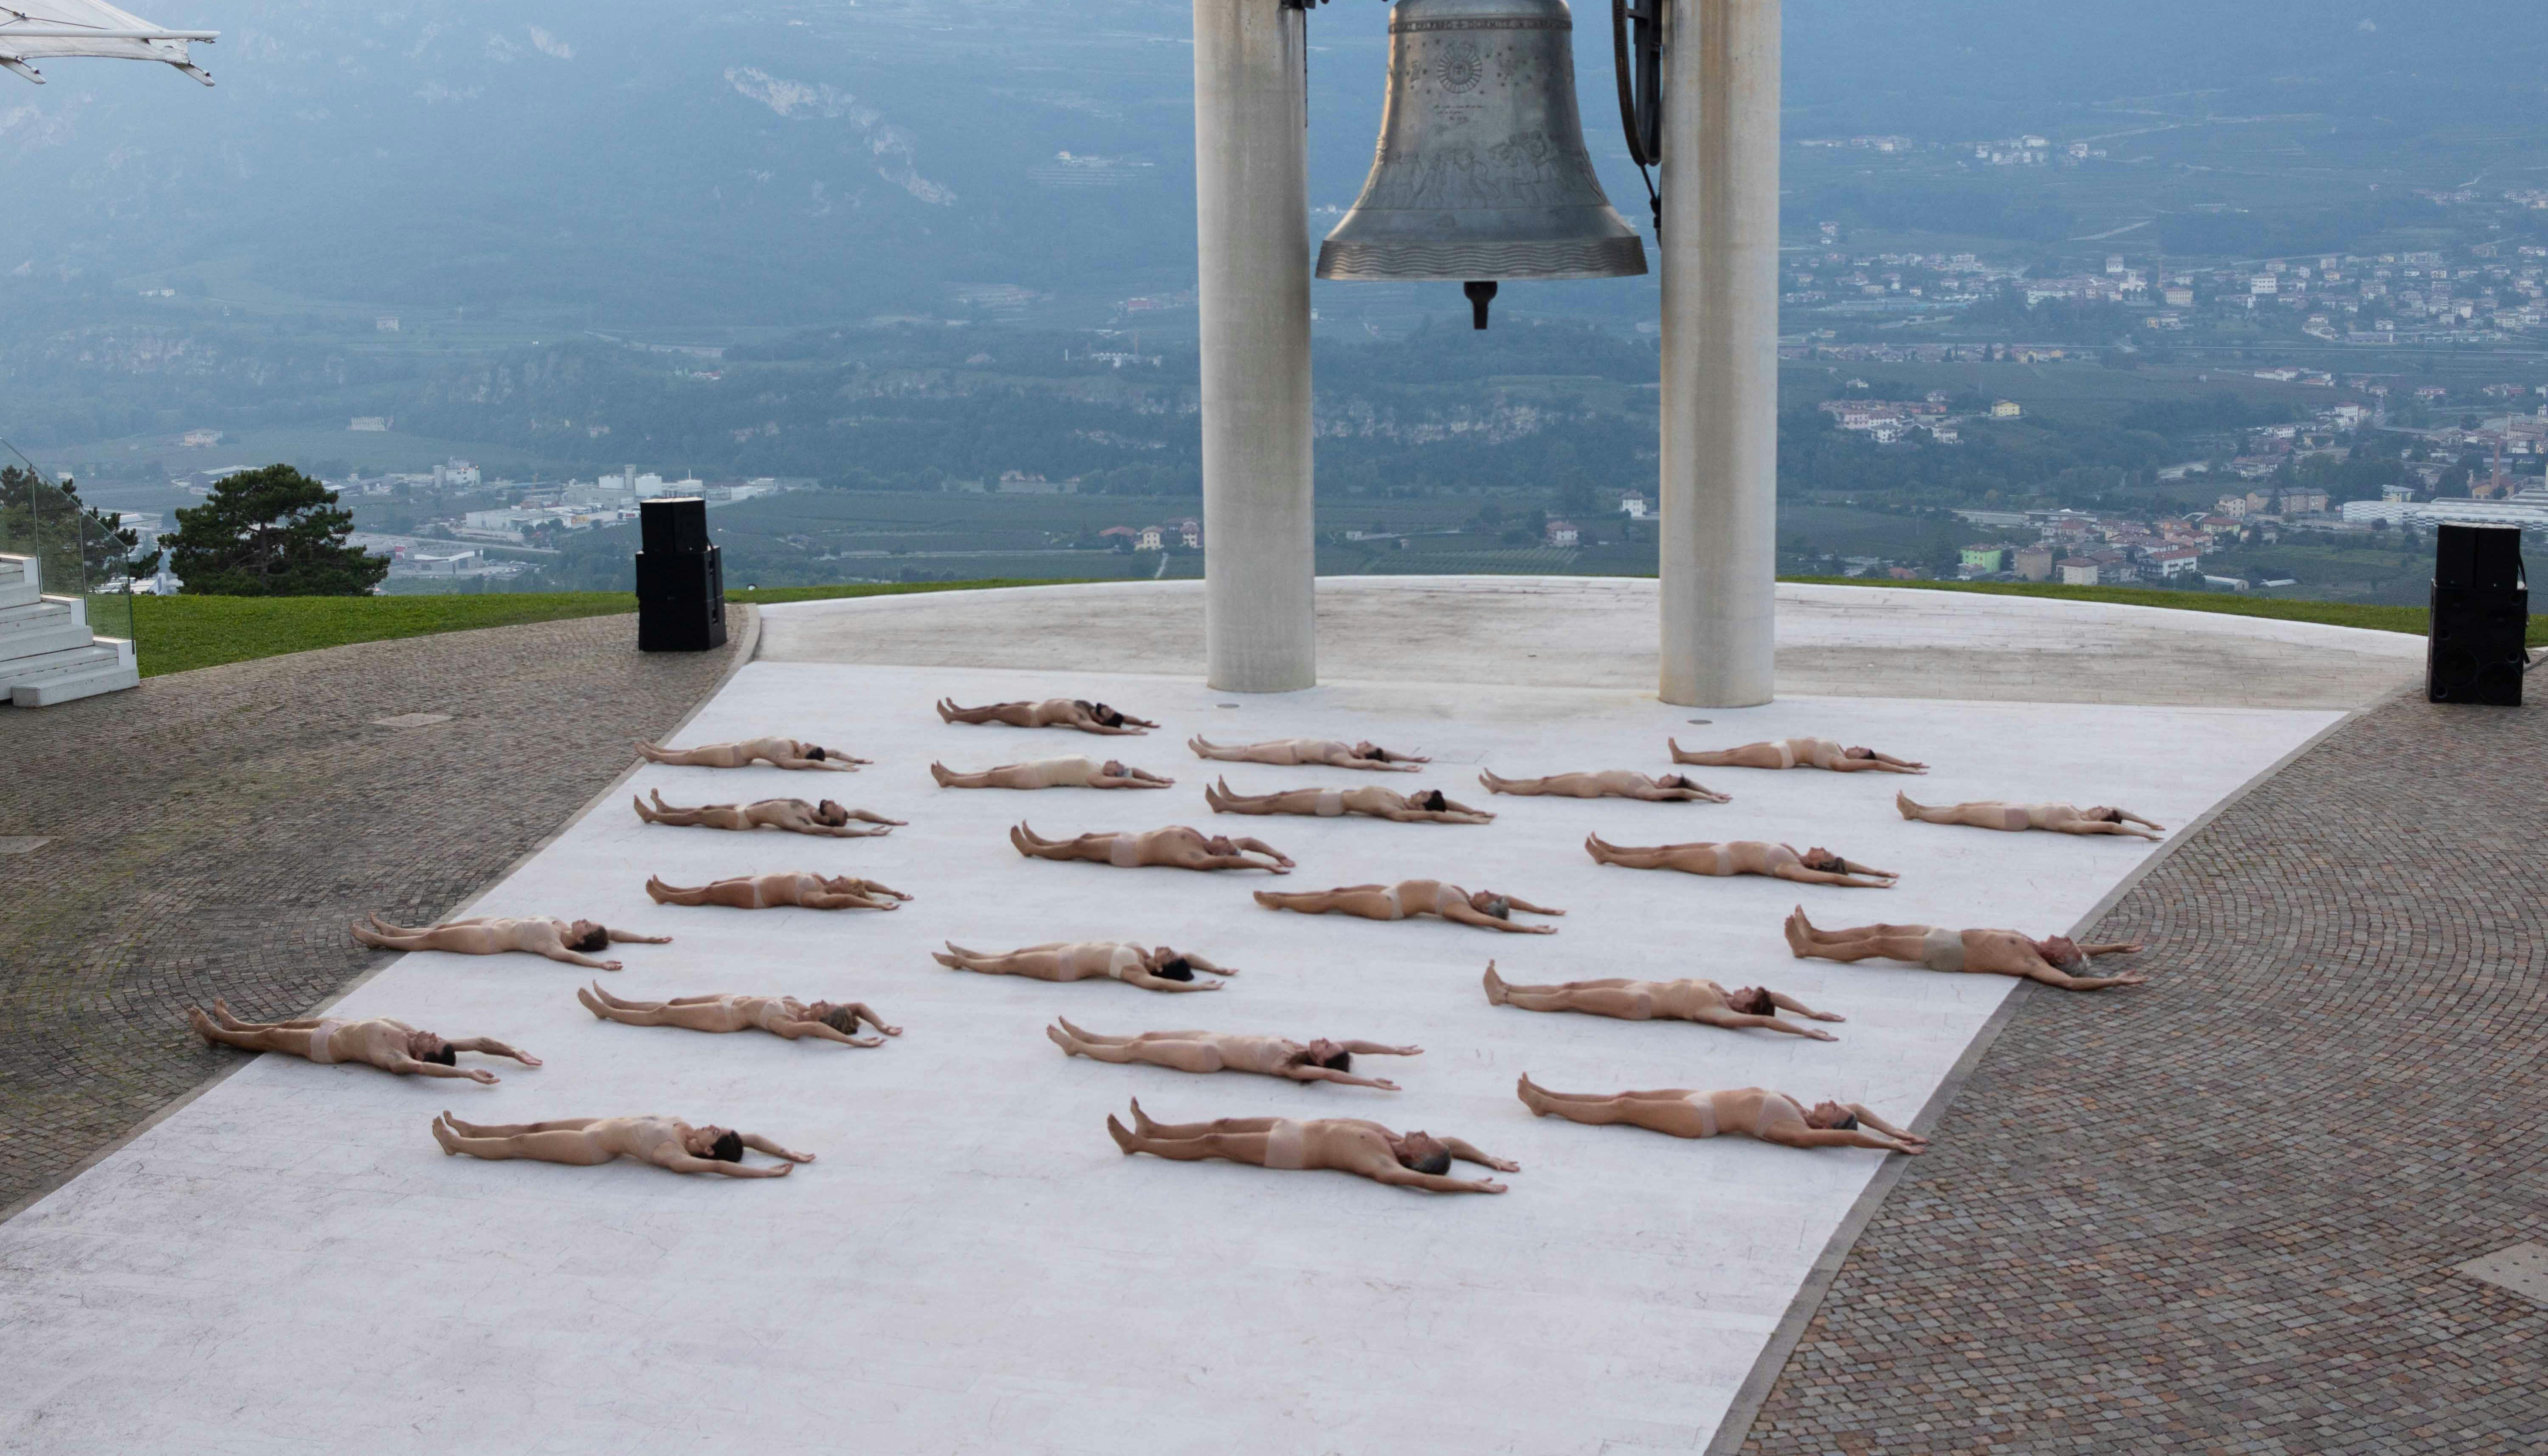 Alla base della Campana dei Caduti di Rovereto, numerosi corpi umani sono sdraiati a terra, rivolti verso l'alto, nudi. La loro disposizione nello spazio è ordinata.